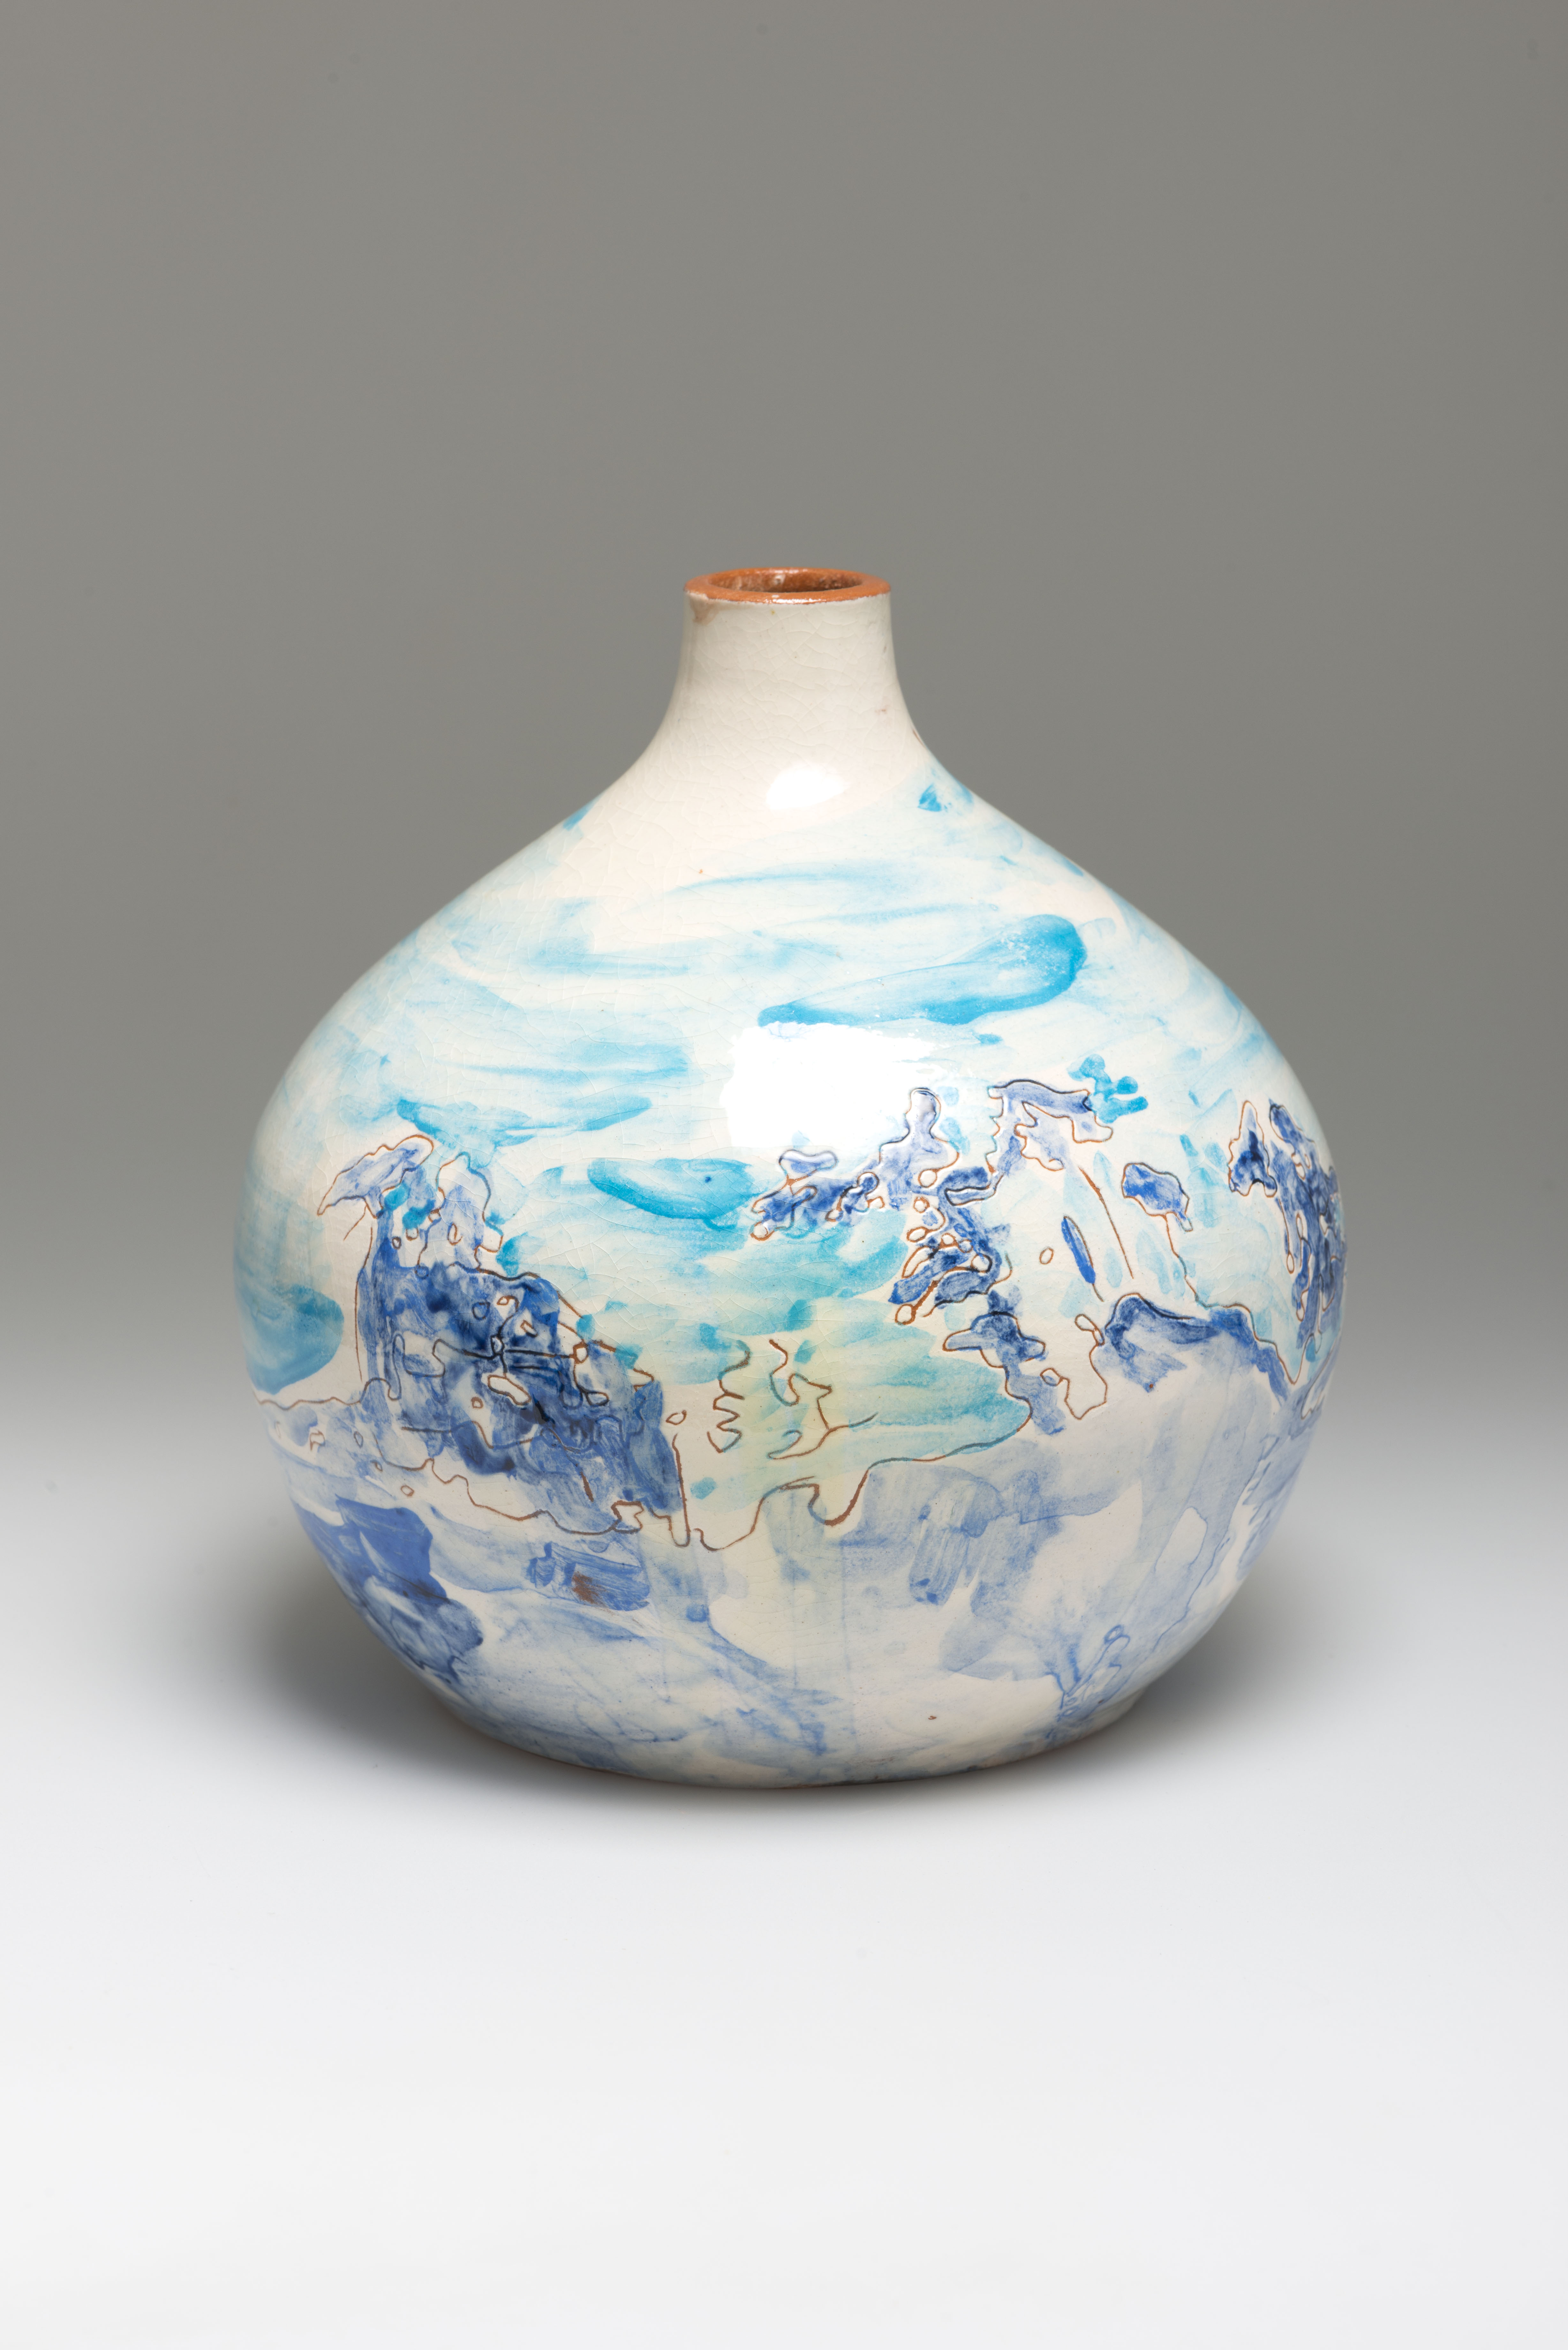 Flower Vase, ceramic, NL 2013